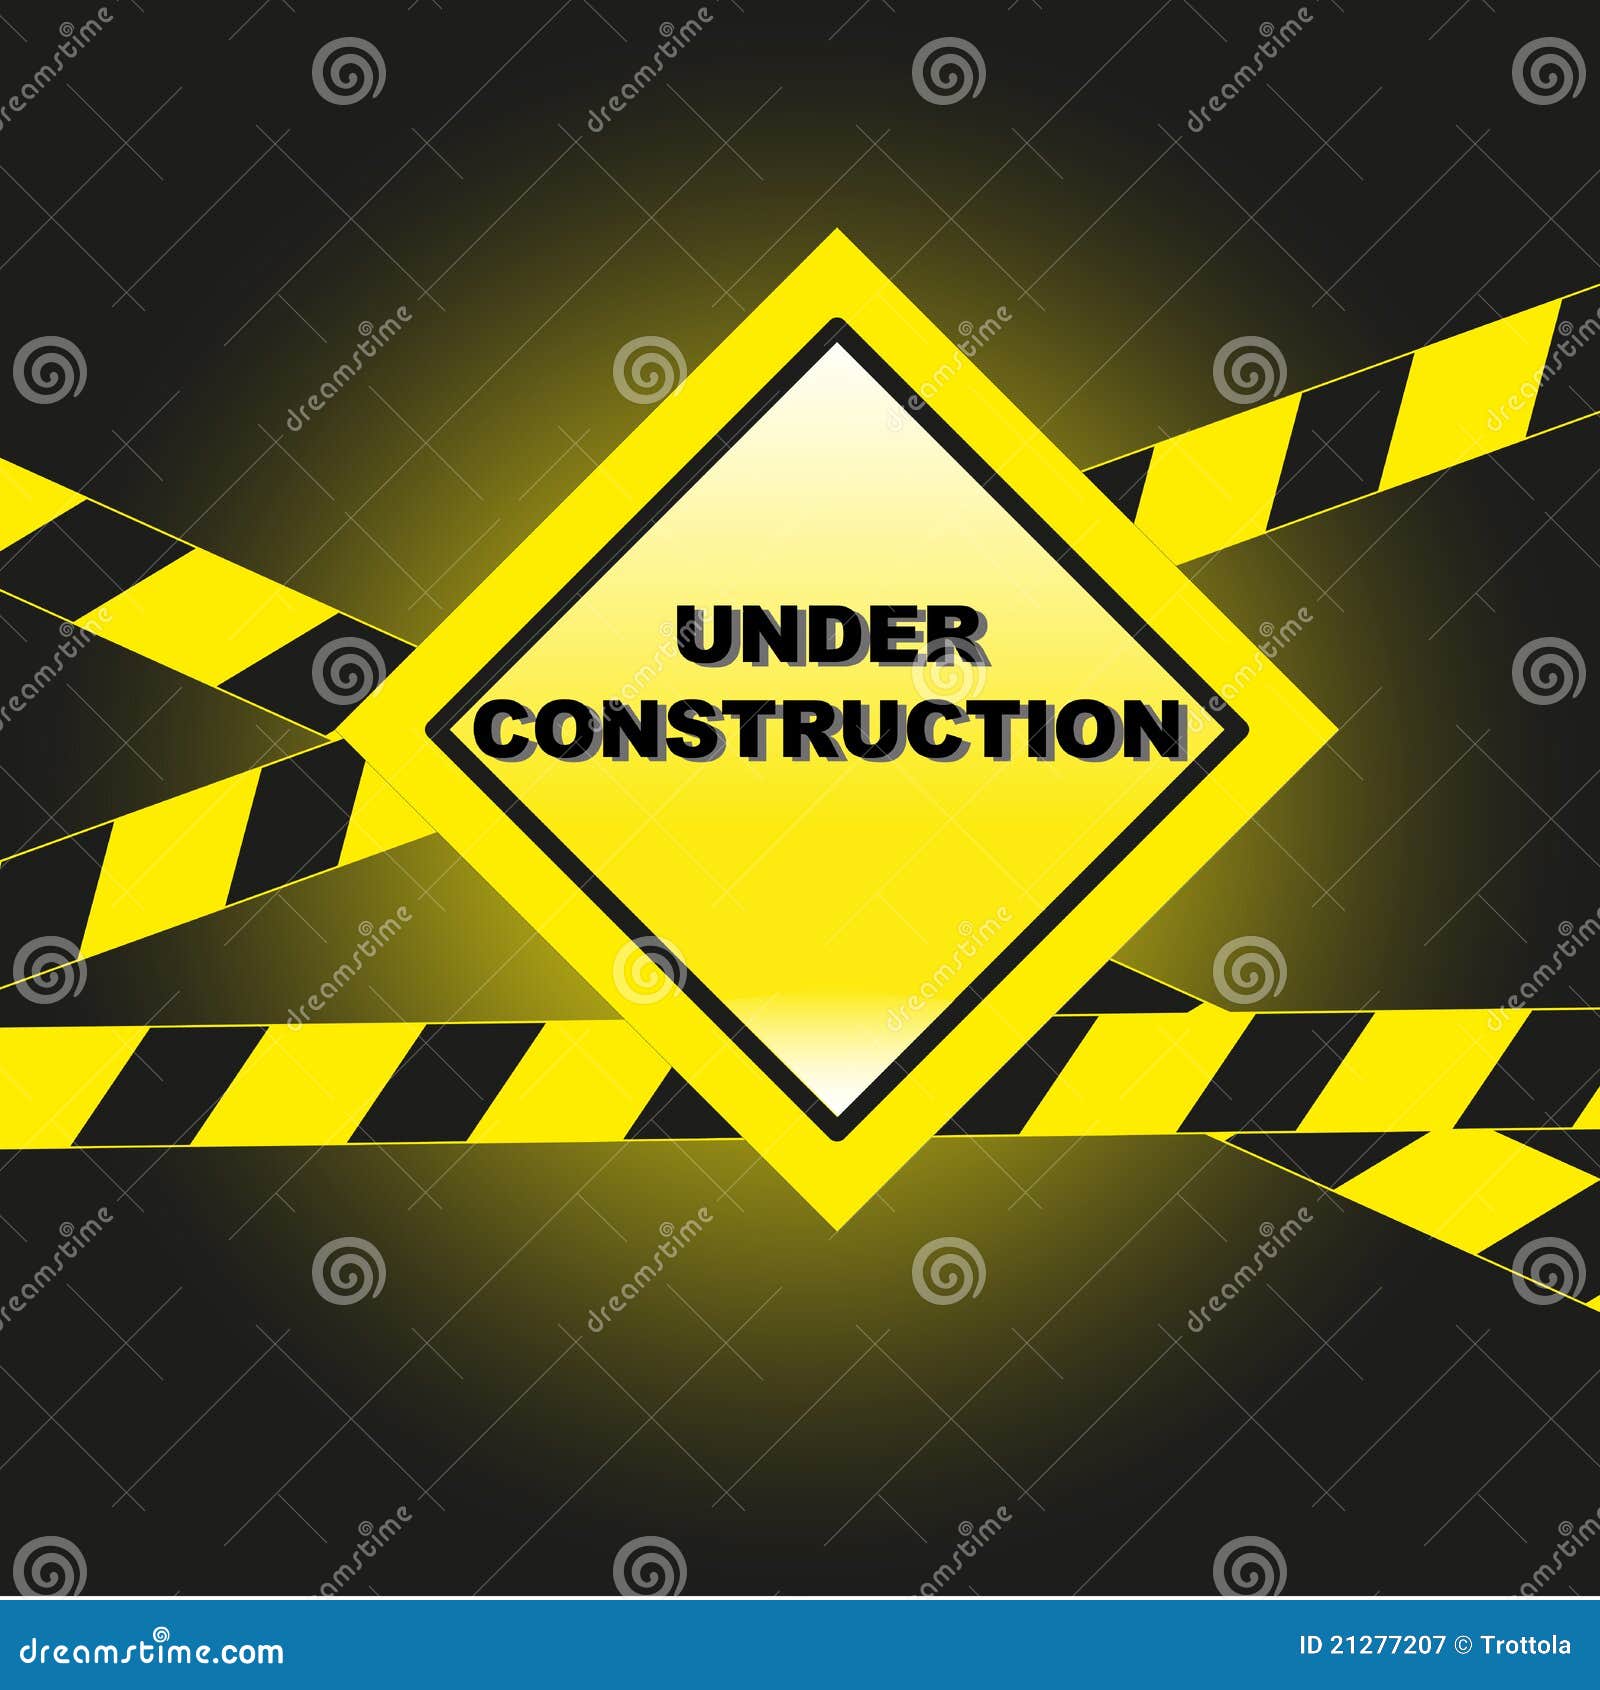 Under construction stock vector. Illustration of warning - 21277207